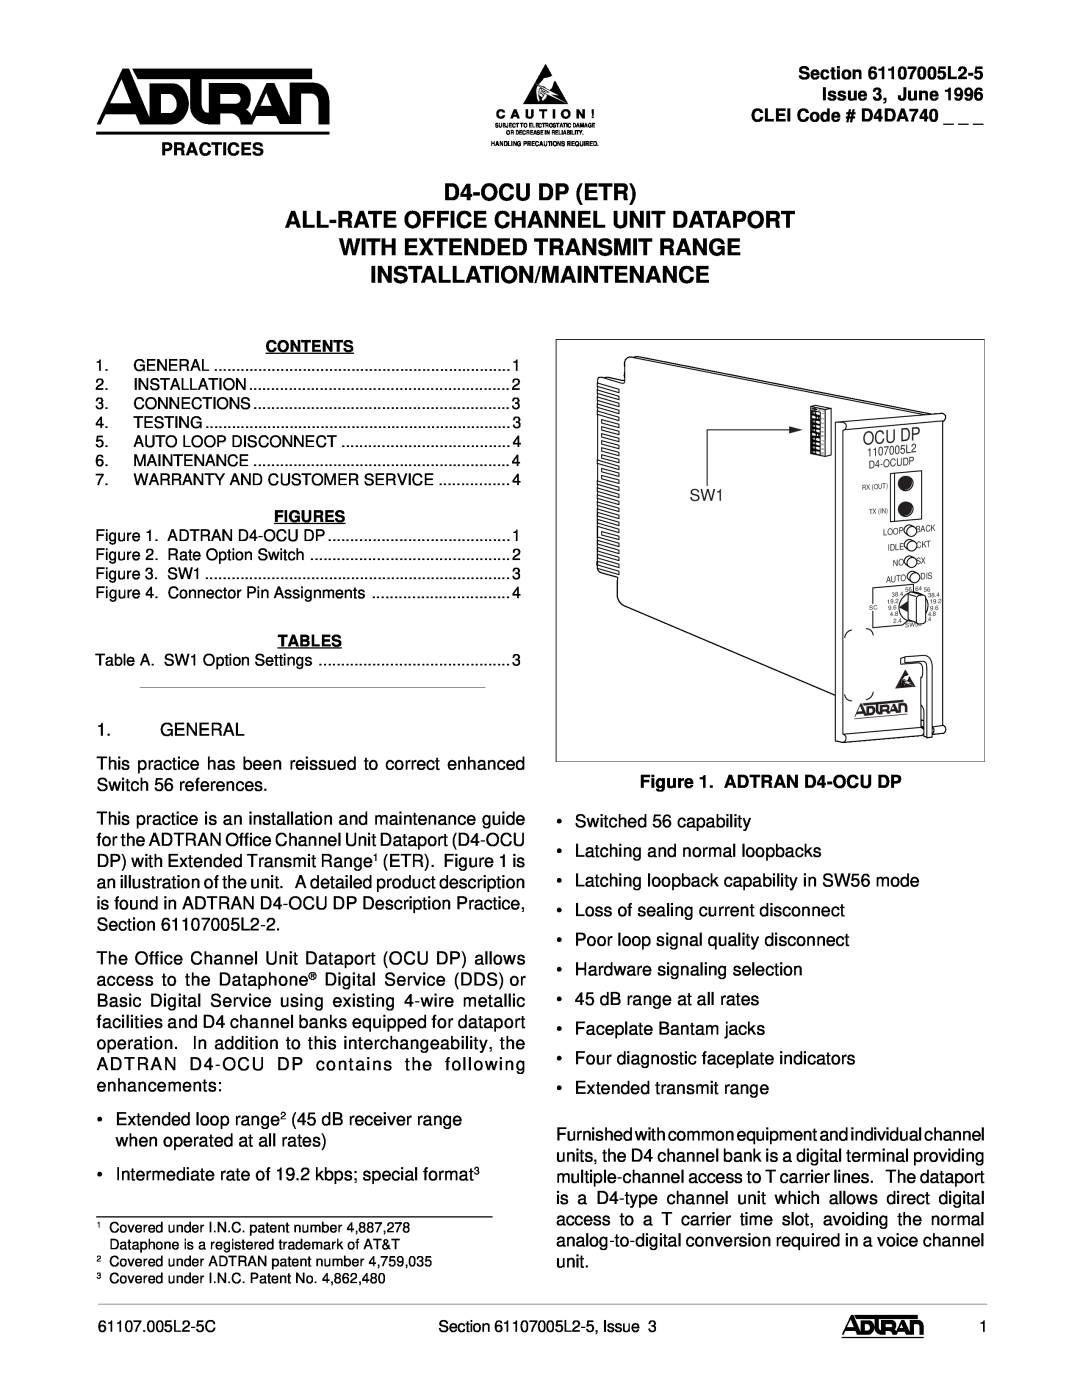 ADTRAN warranty L2-5 Issue 3, June CLEI Code # D4DA740, Practices, ADTRAN D4-OCU DP 